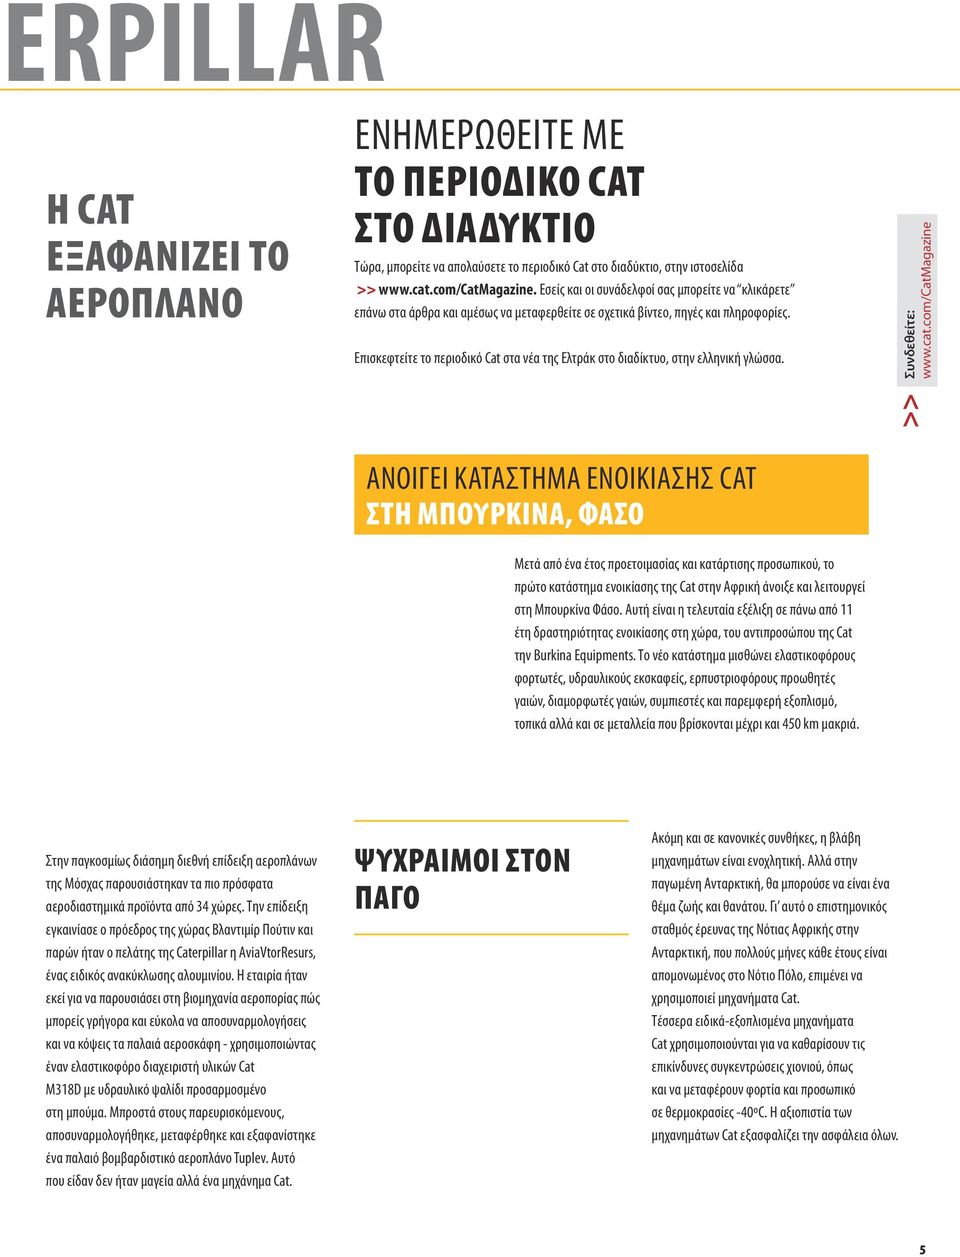 Επισκεφτείτε το περιοδικό Cat στα νέα της Ελτράκ στο διαδίκτυο, στην ελληνική γλώσσα. Συνδεθείτε: www.cat.